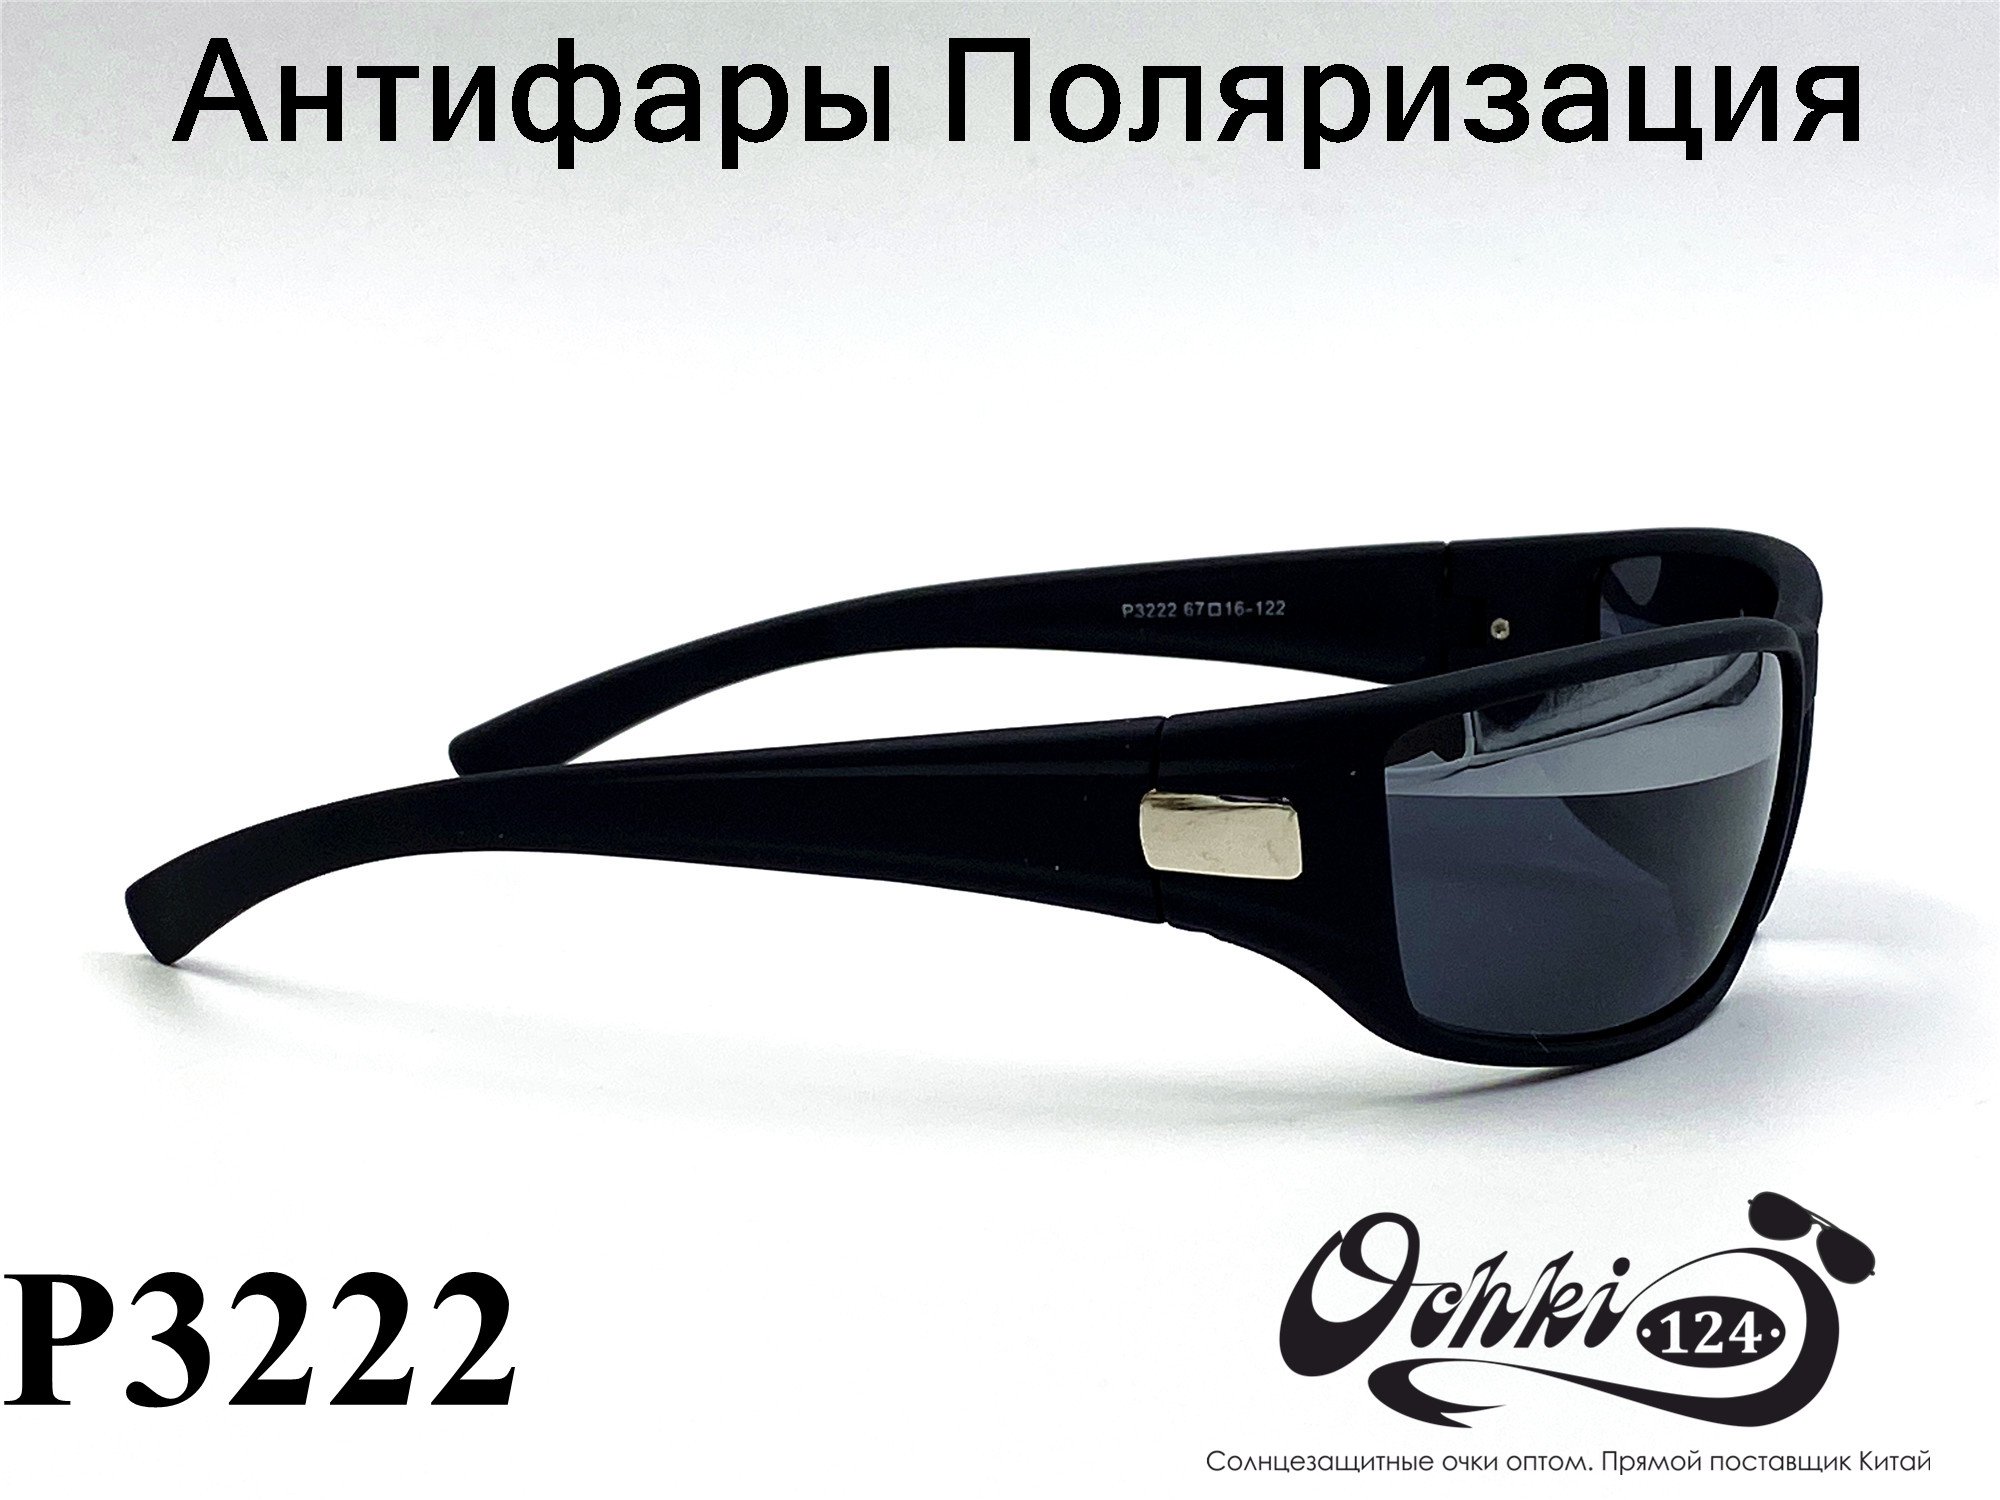  Солнцезащитные очки картинка 2022 Мужские антифары-спорт, с зеркальной полосой, Черный Polarized P3222-2 